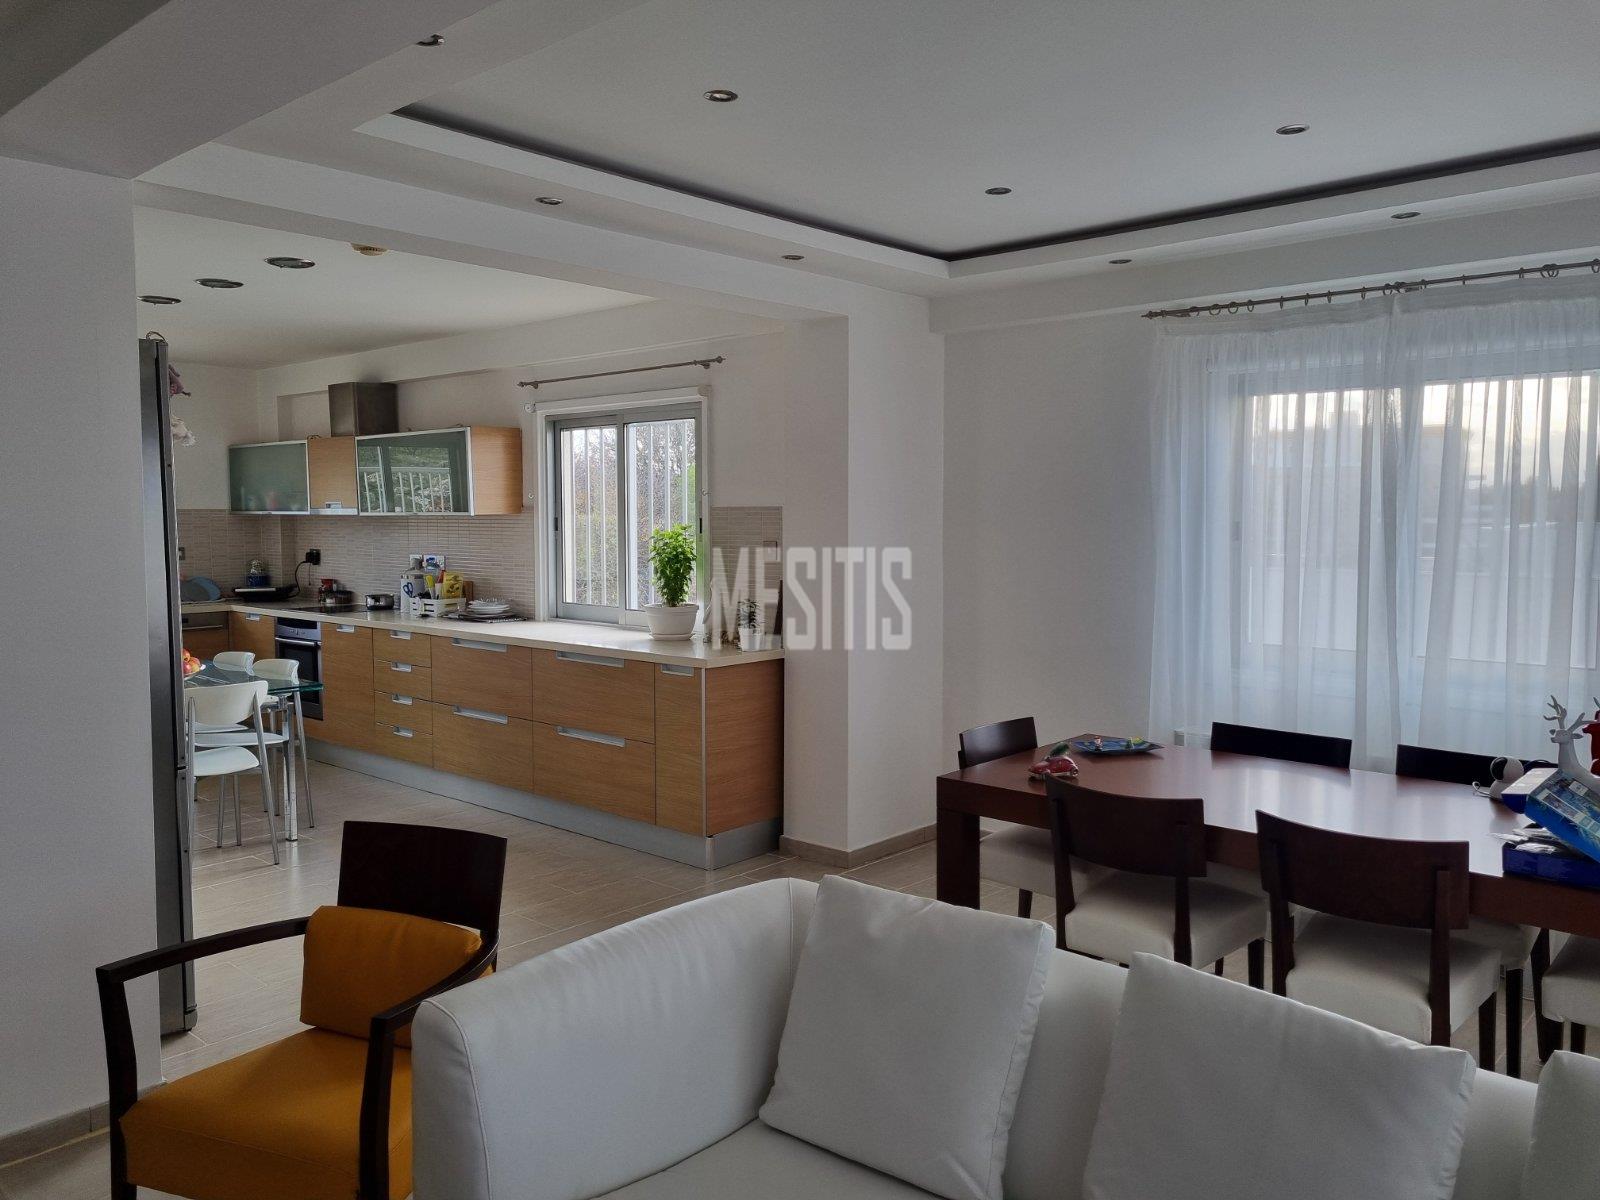 3 Βedroom Τop Floor Apartment For Sale In A Prime Location With Large Spaces And Incredible Aesthetics Αnd Views To All Of Nicosia #30861-4